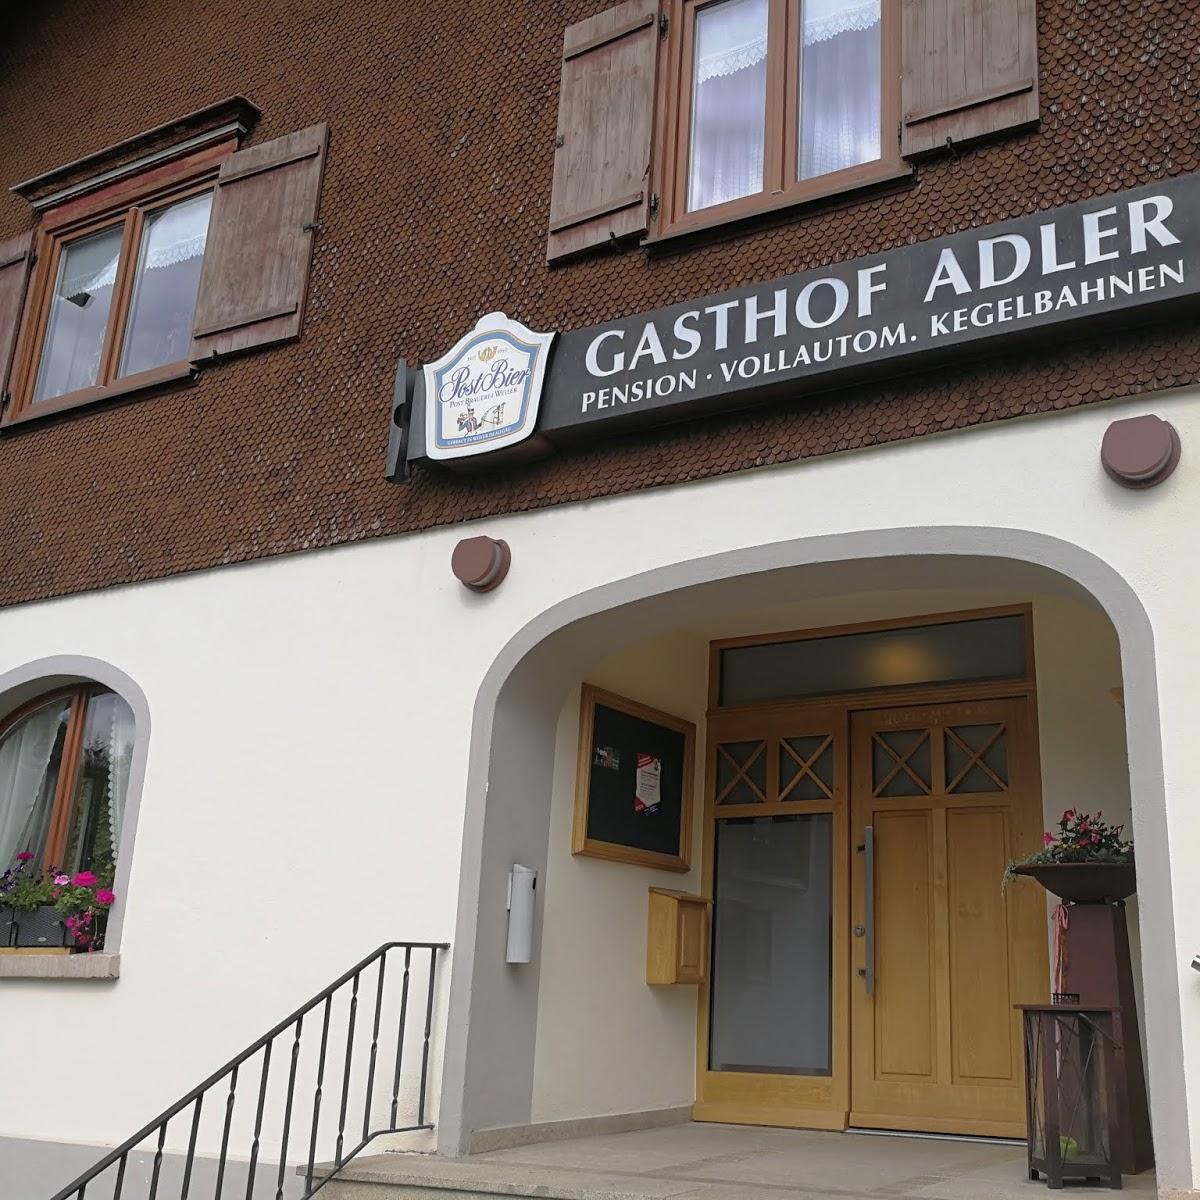 Restaurant "Gasthof Adler" in Maierhöfen